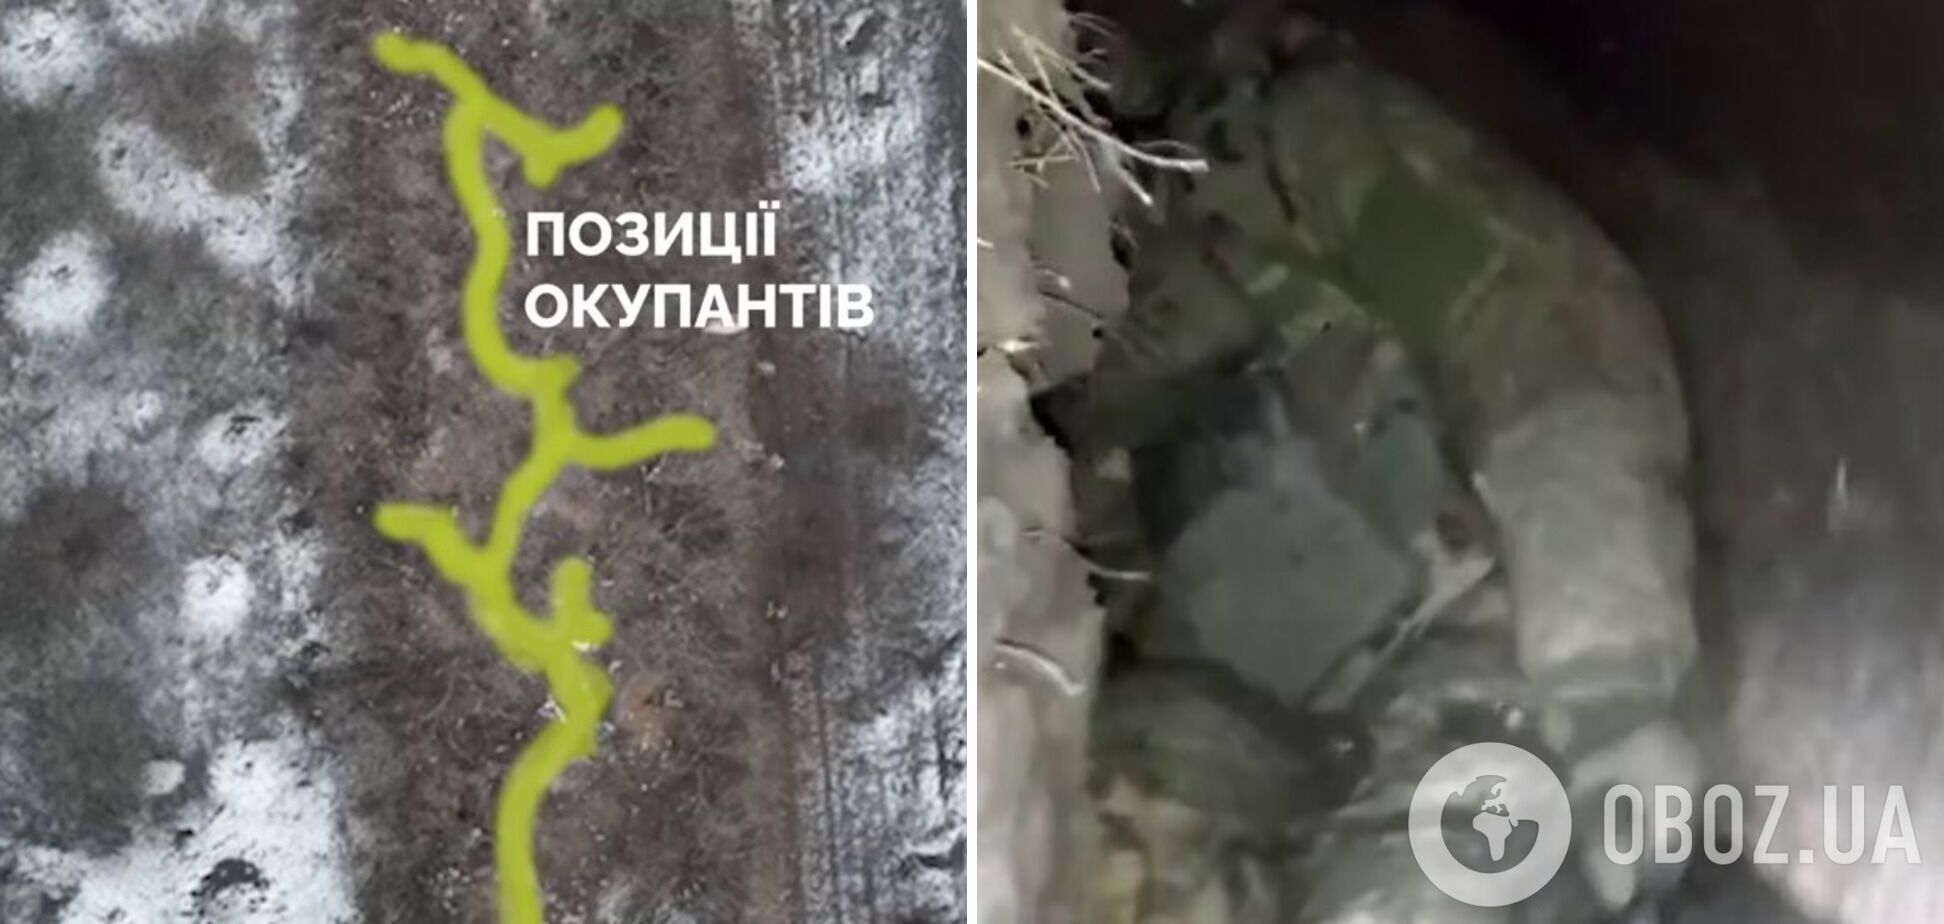 Воины ВСУ выбили оккупантов с позиции на востоке и захватили трофеи: защитники показали видео операции